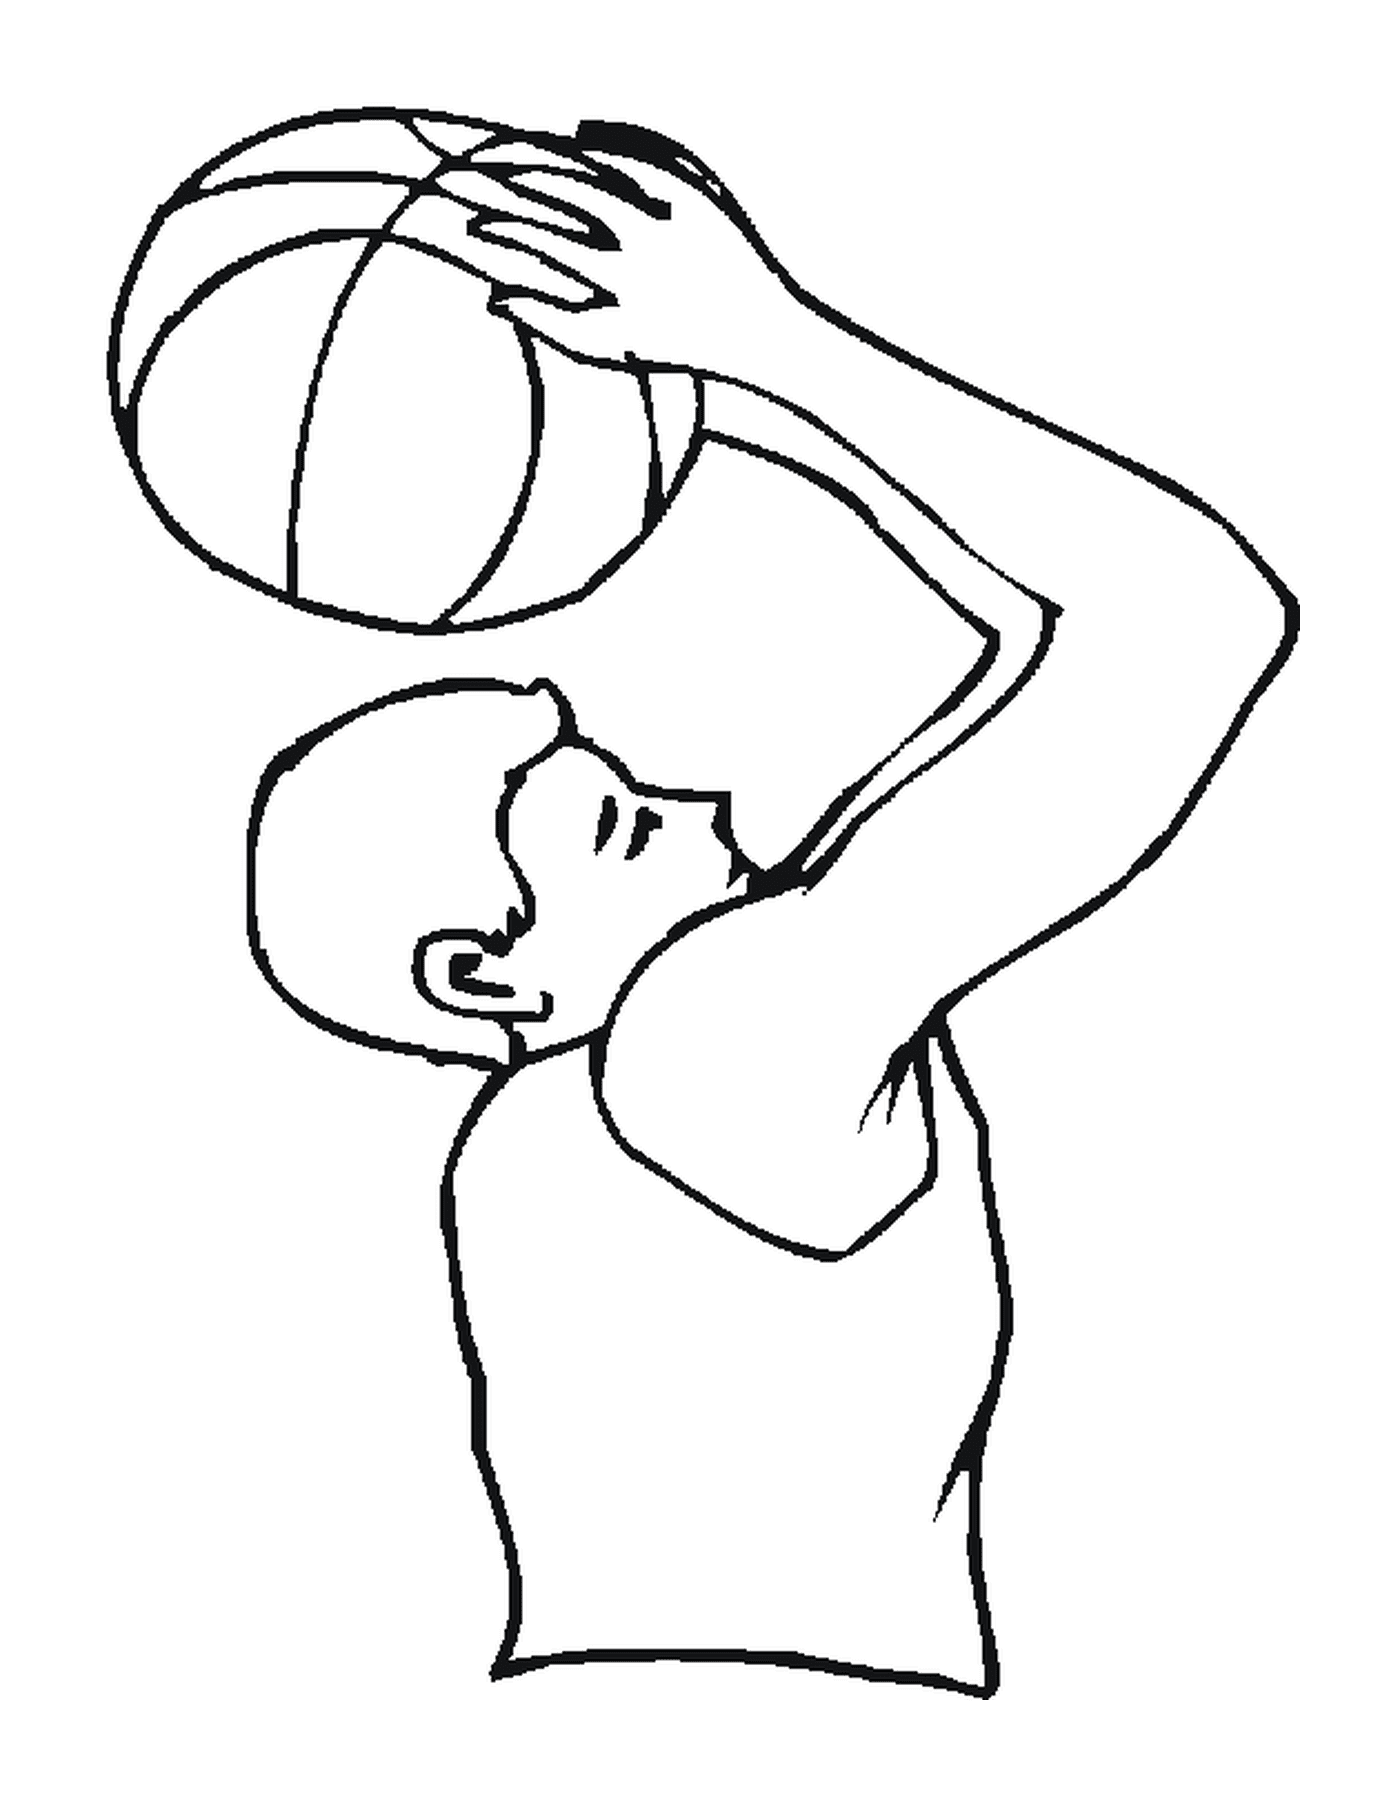   Un homme tient un ballon de basketball 